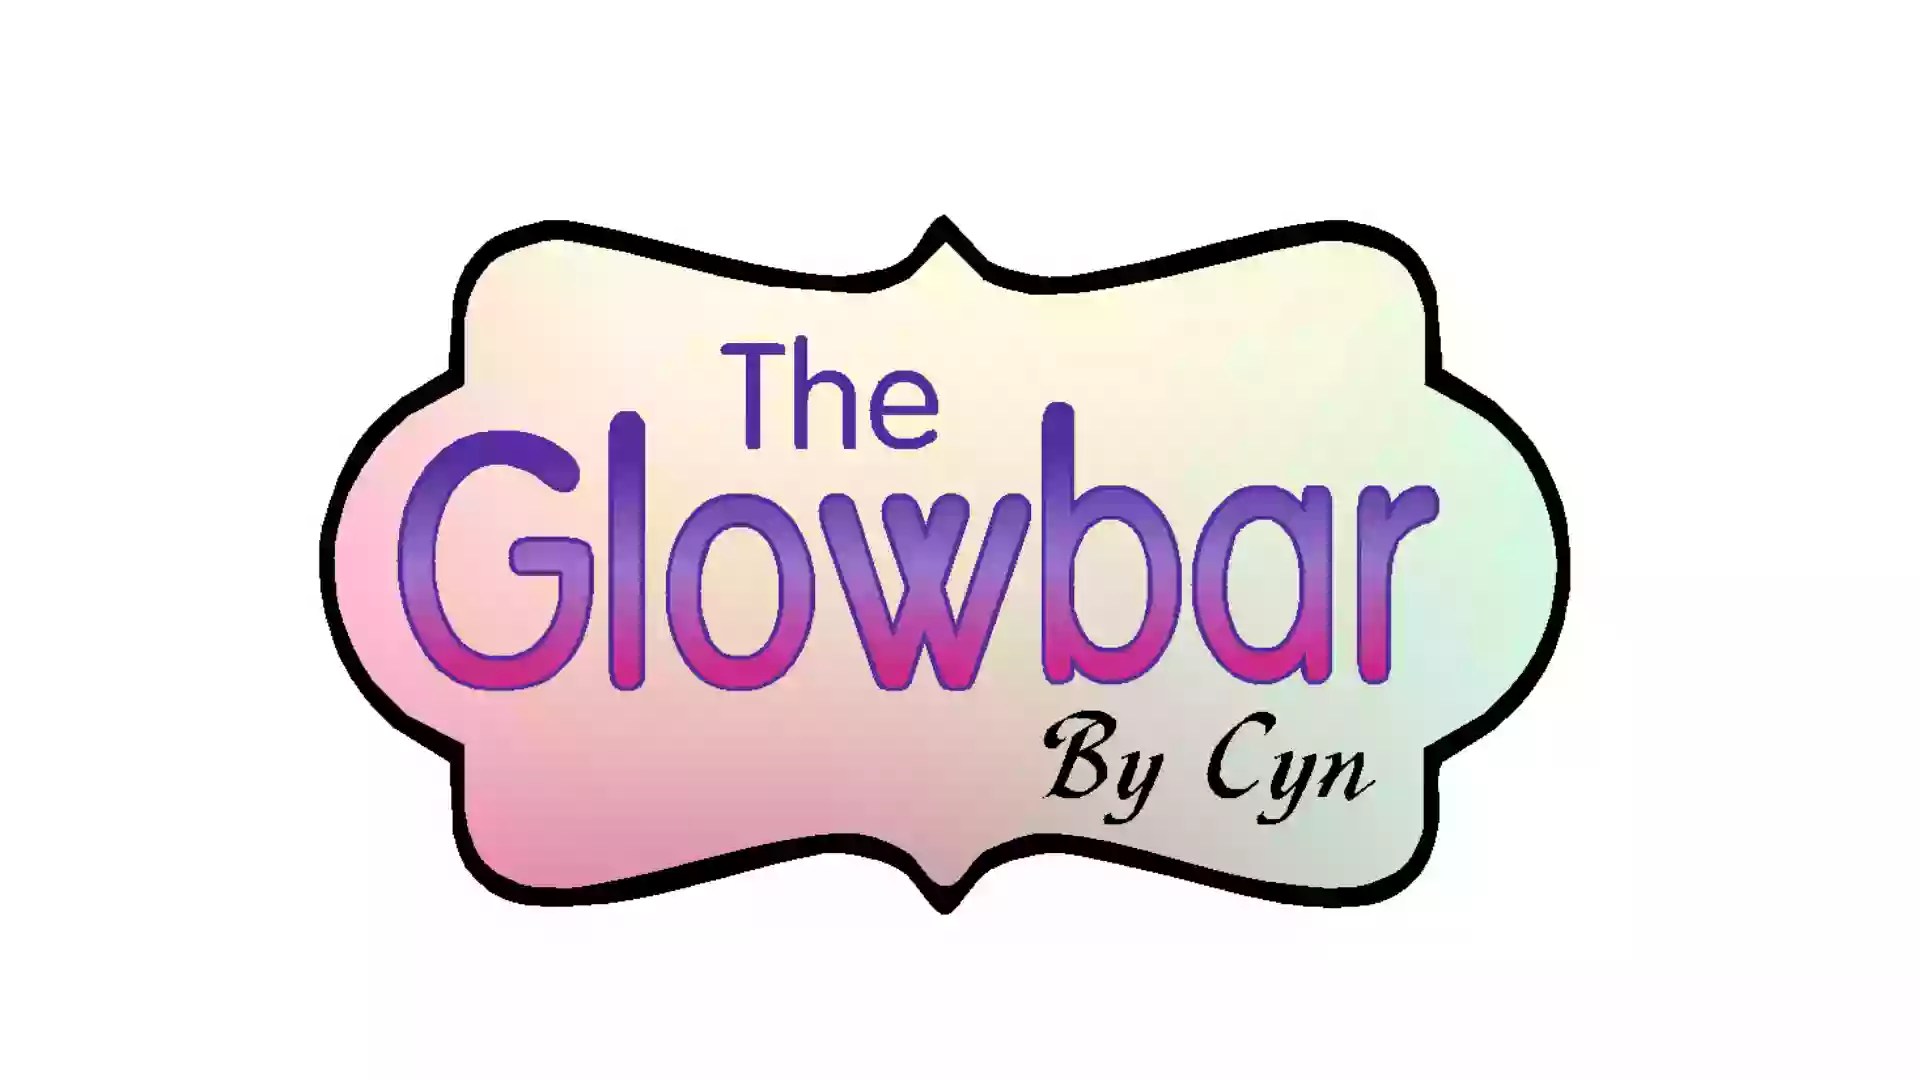 The Glowbar By Cyn